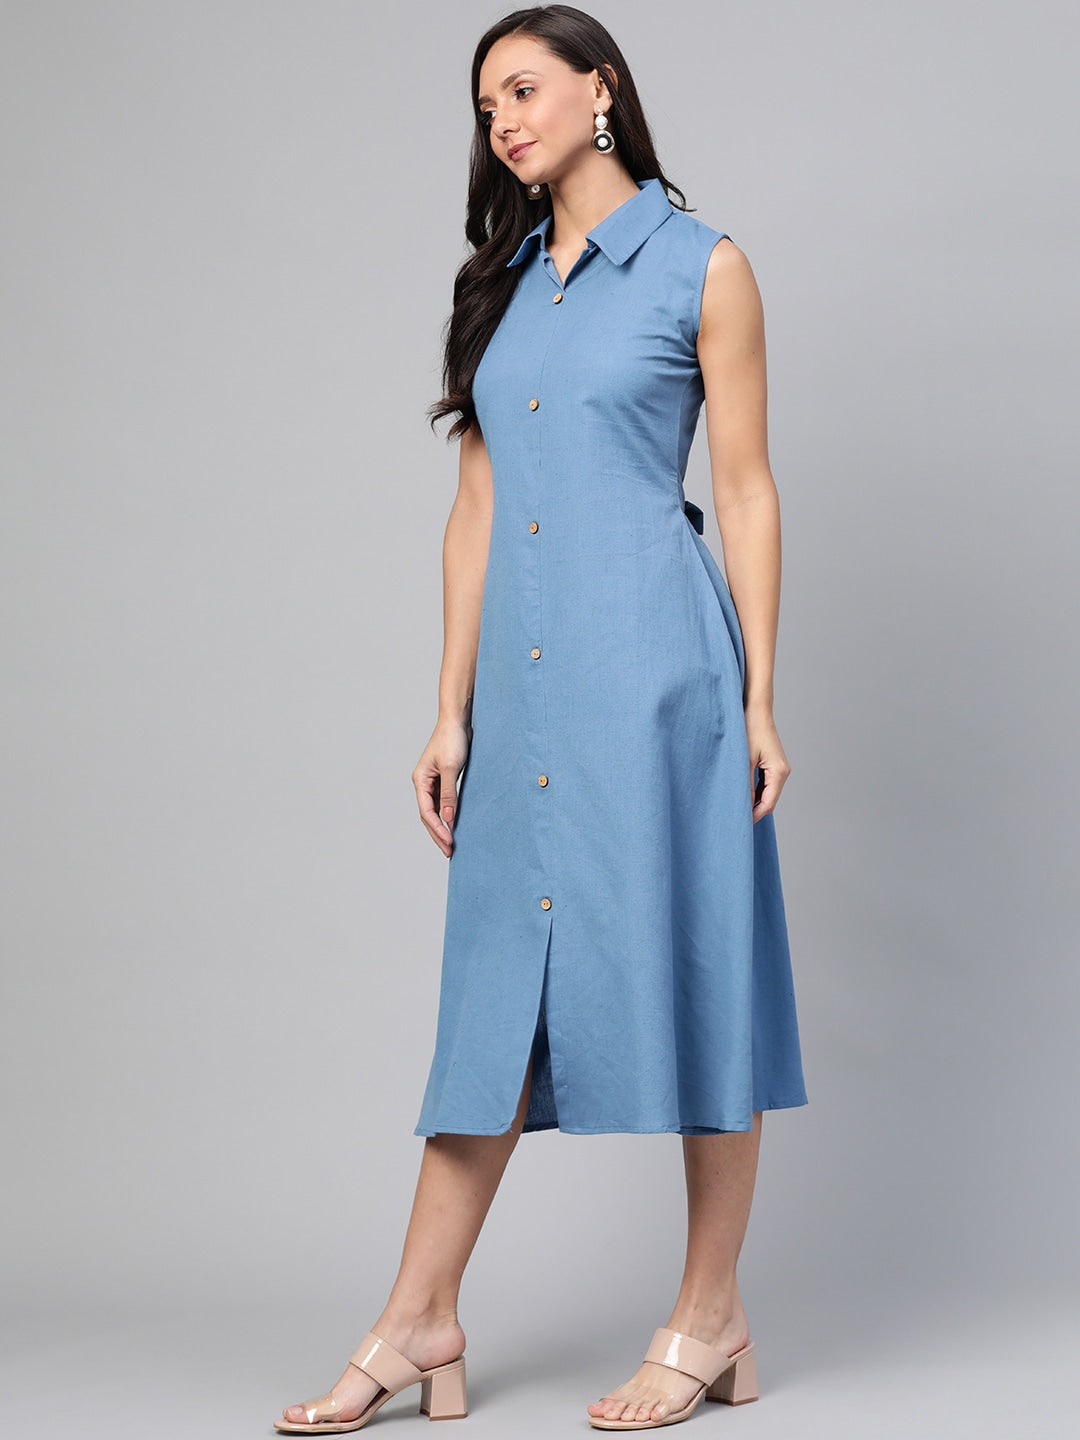 Blue Solid Dress-Yufta Store-7459DRSBLSS